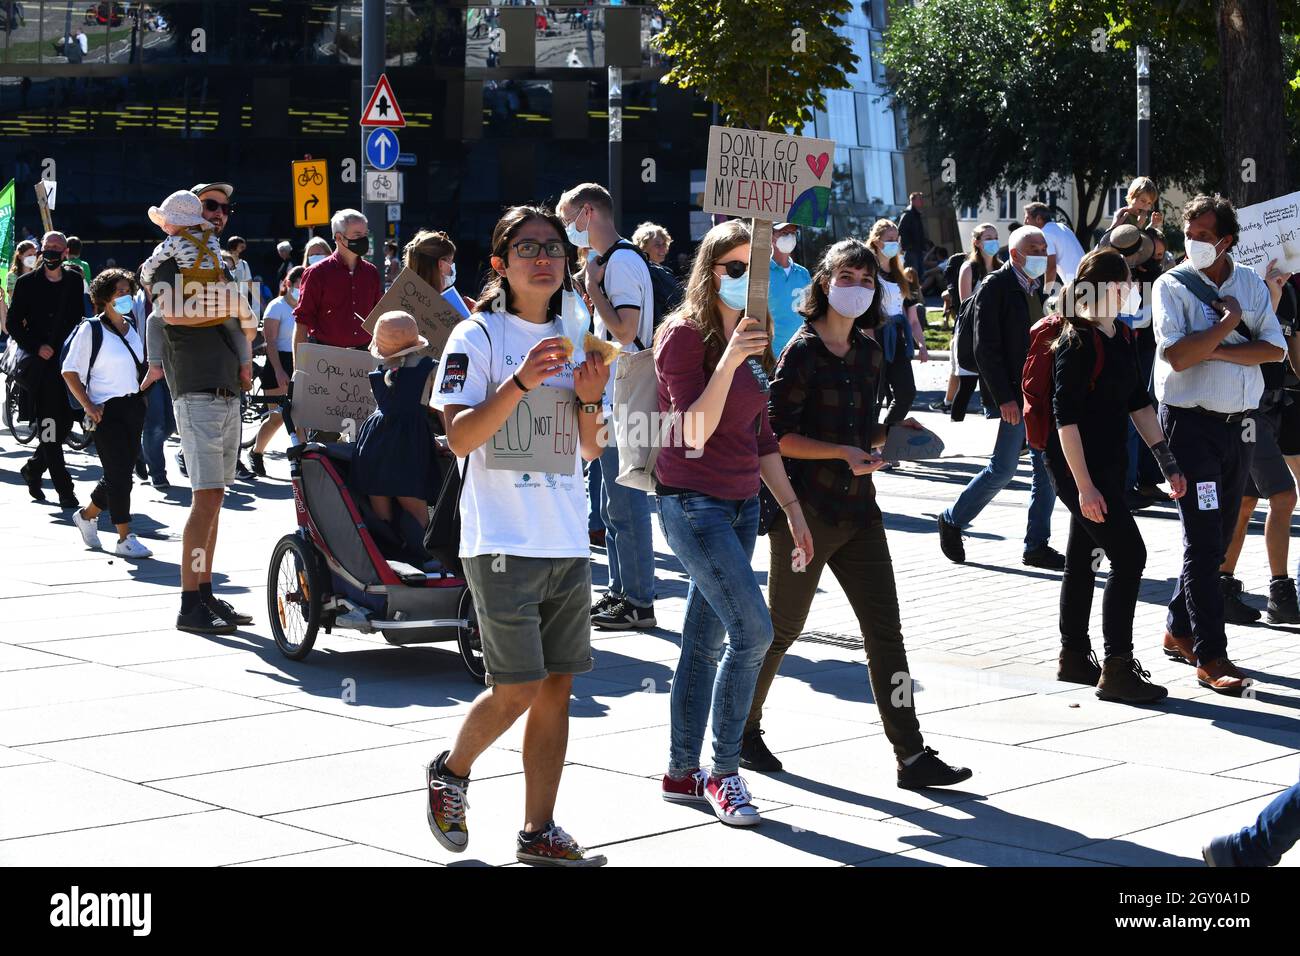 Fribourg Allemagne vendredi pour les manifestations futures les militants allemands du climat manifestent contre le réchauffement climatique Banque D'Images